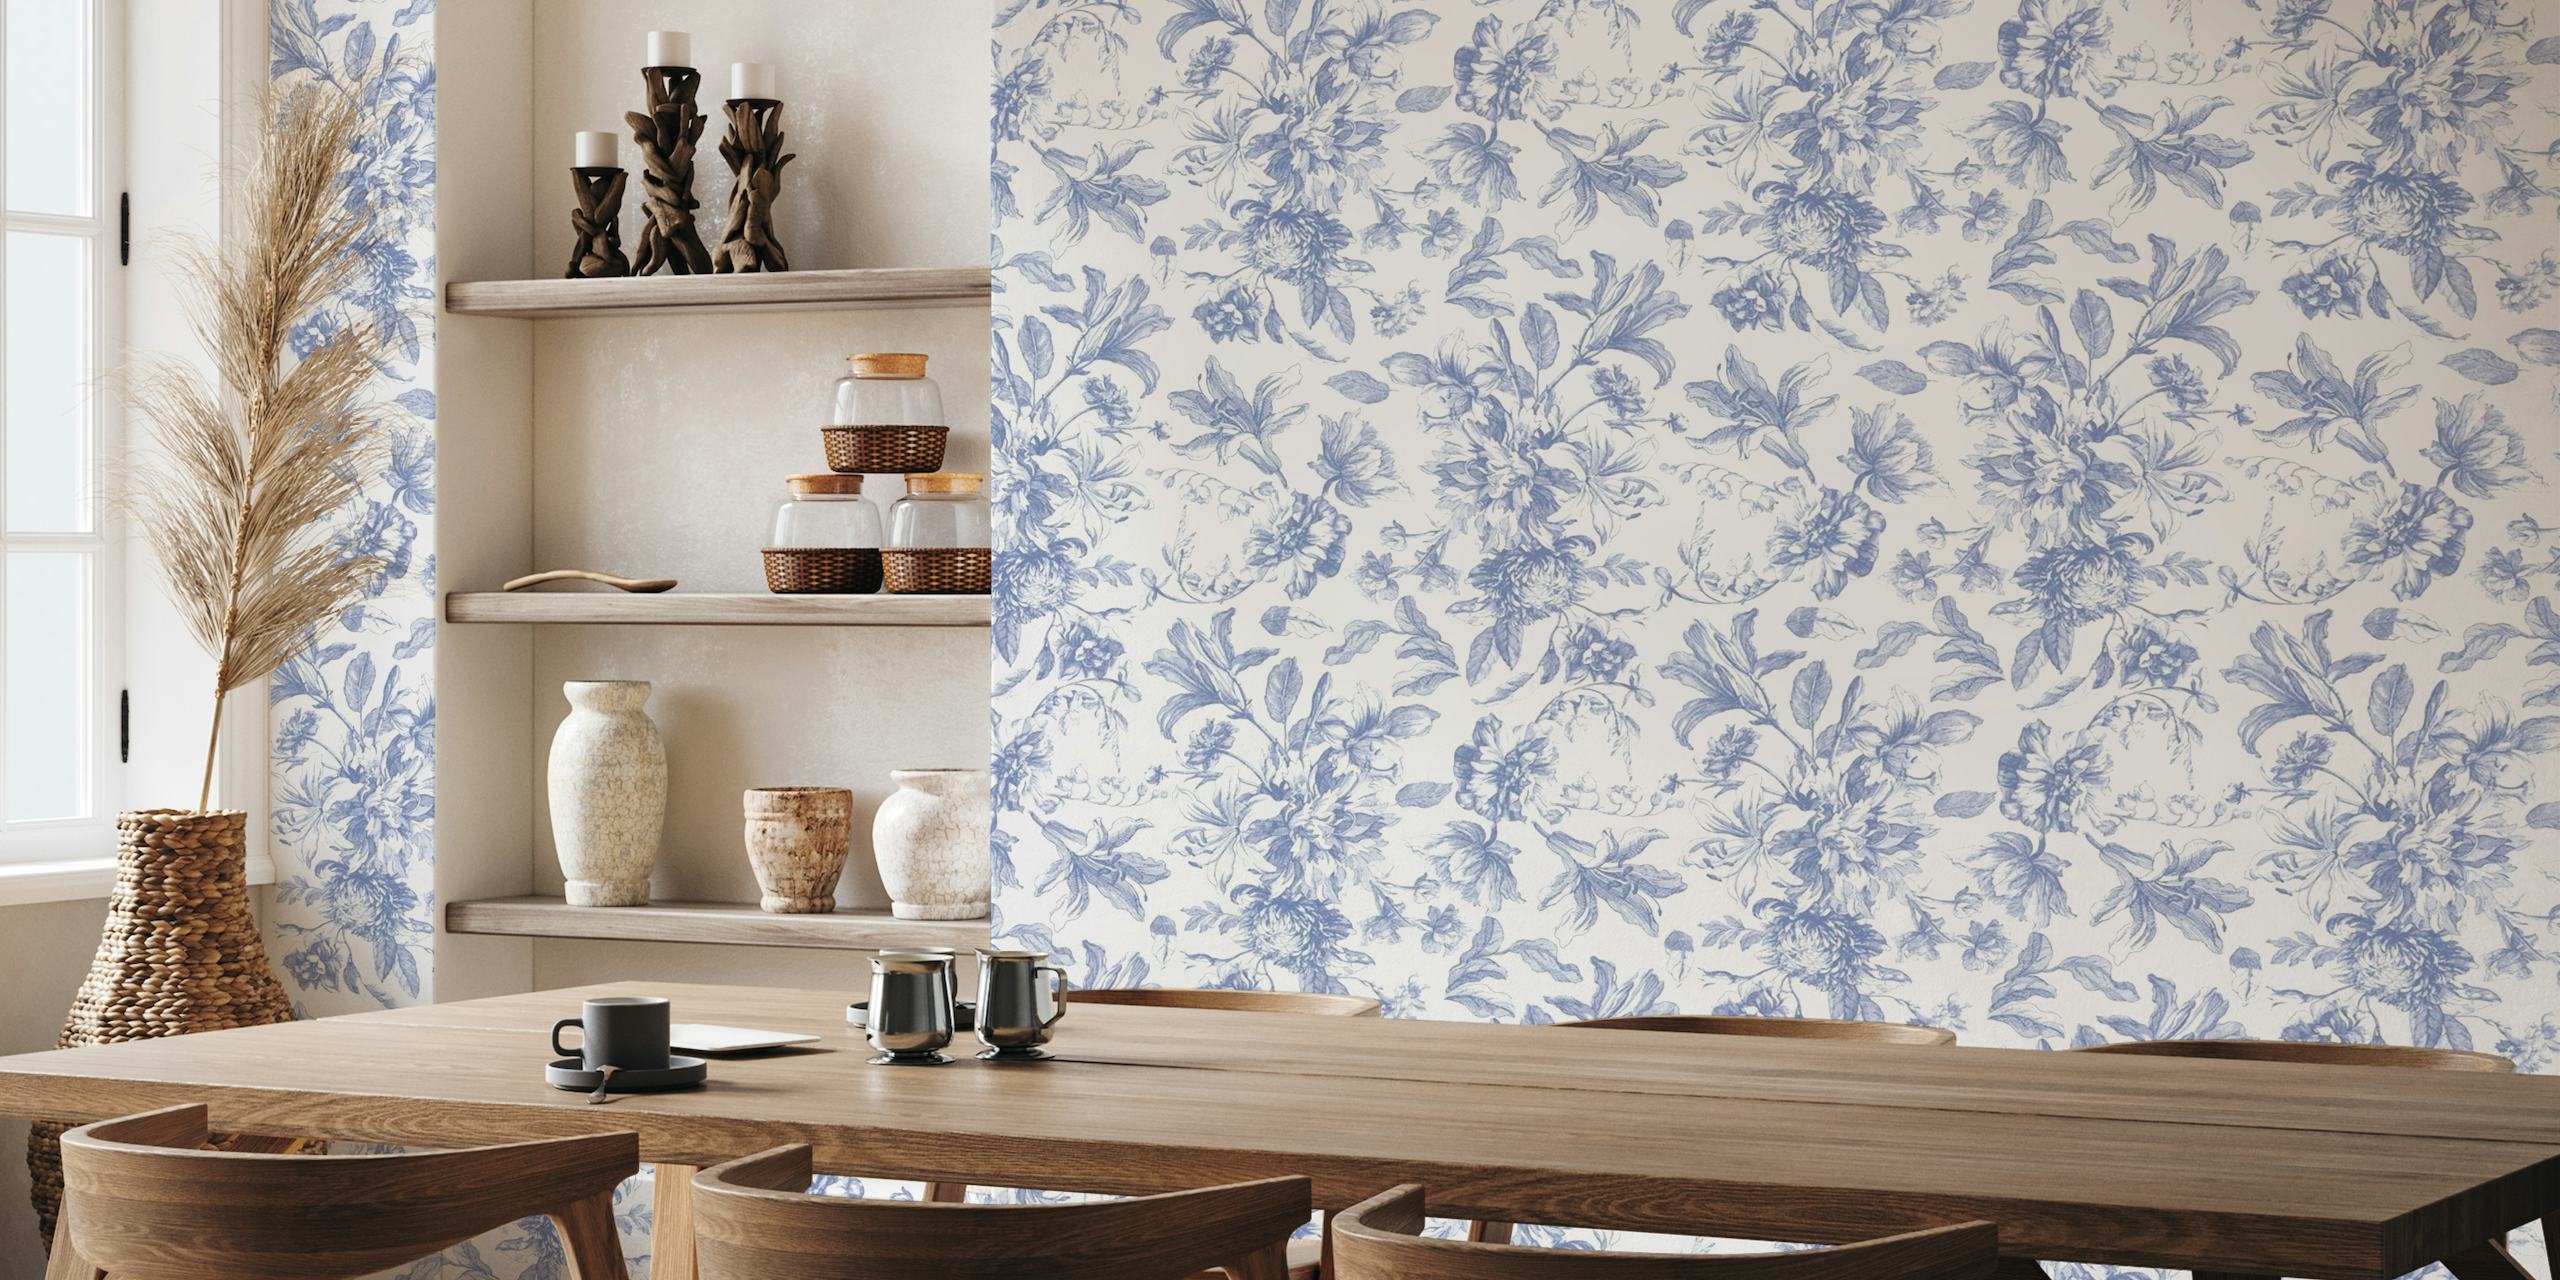 Design elegante de mural de parede floral azul e branco Toile De Jouy